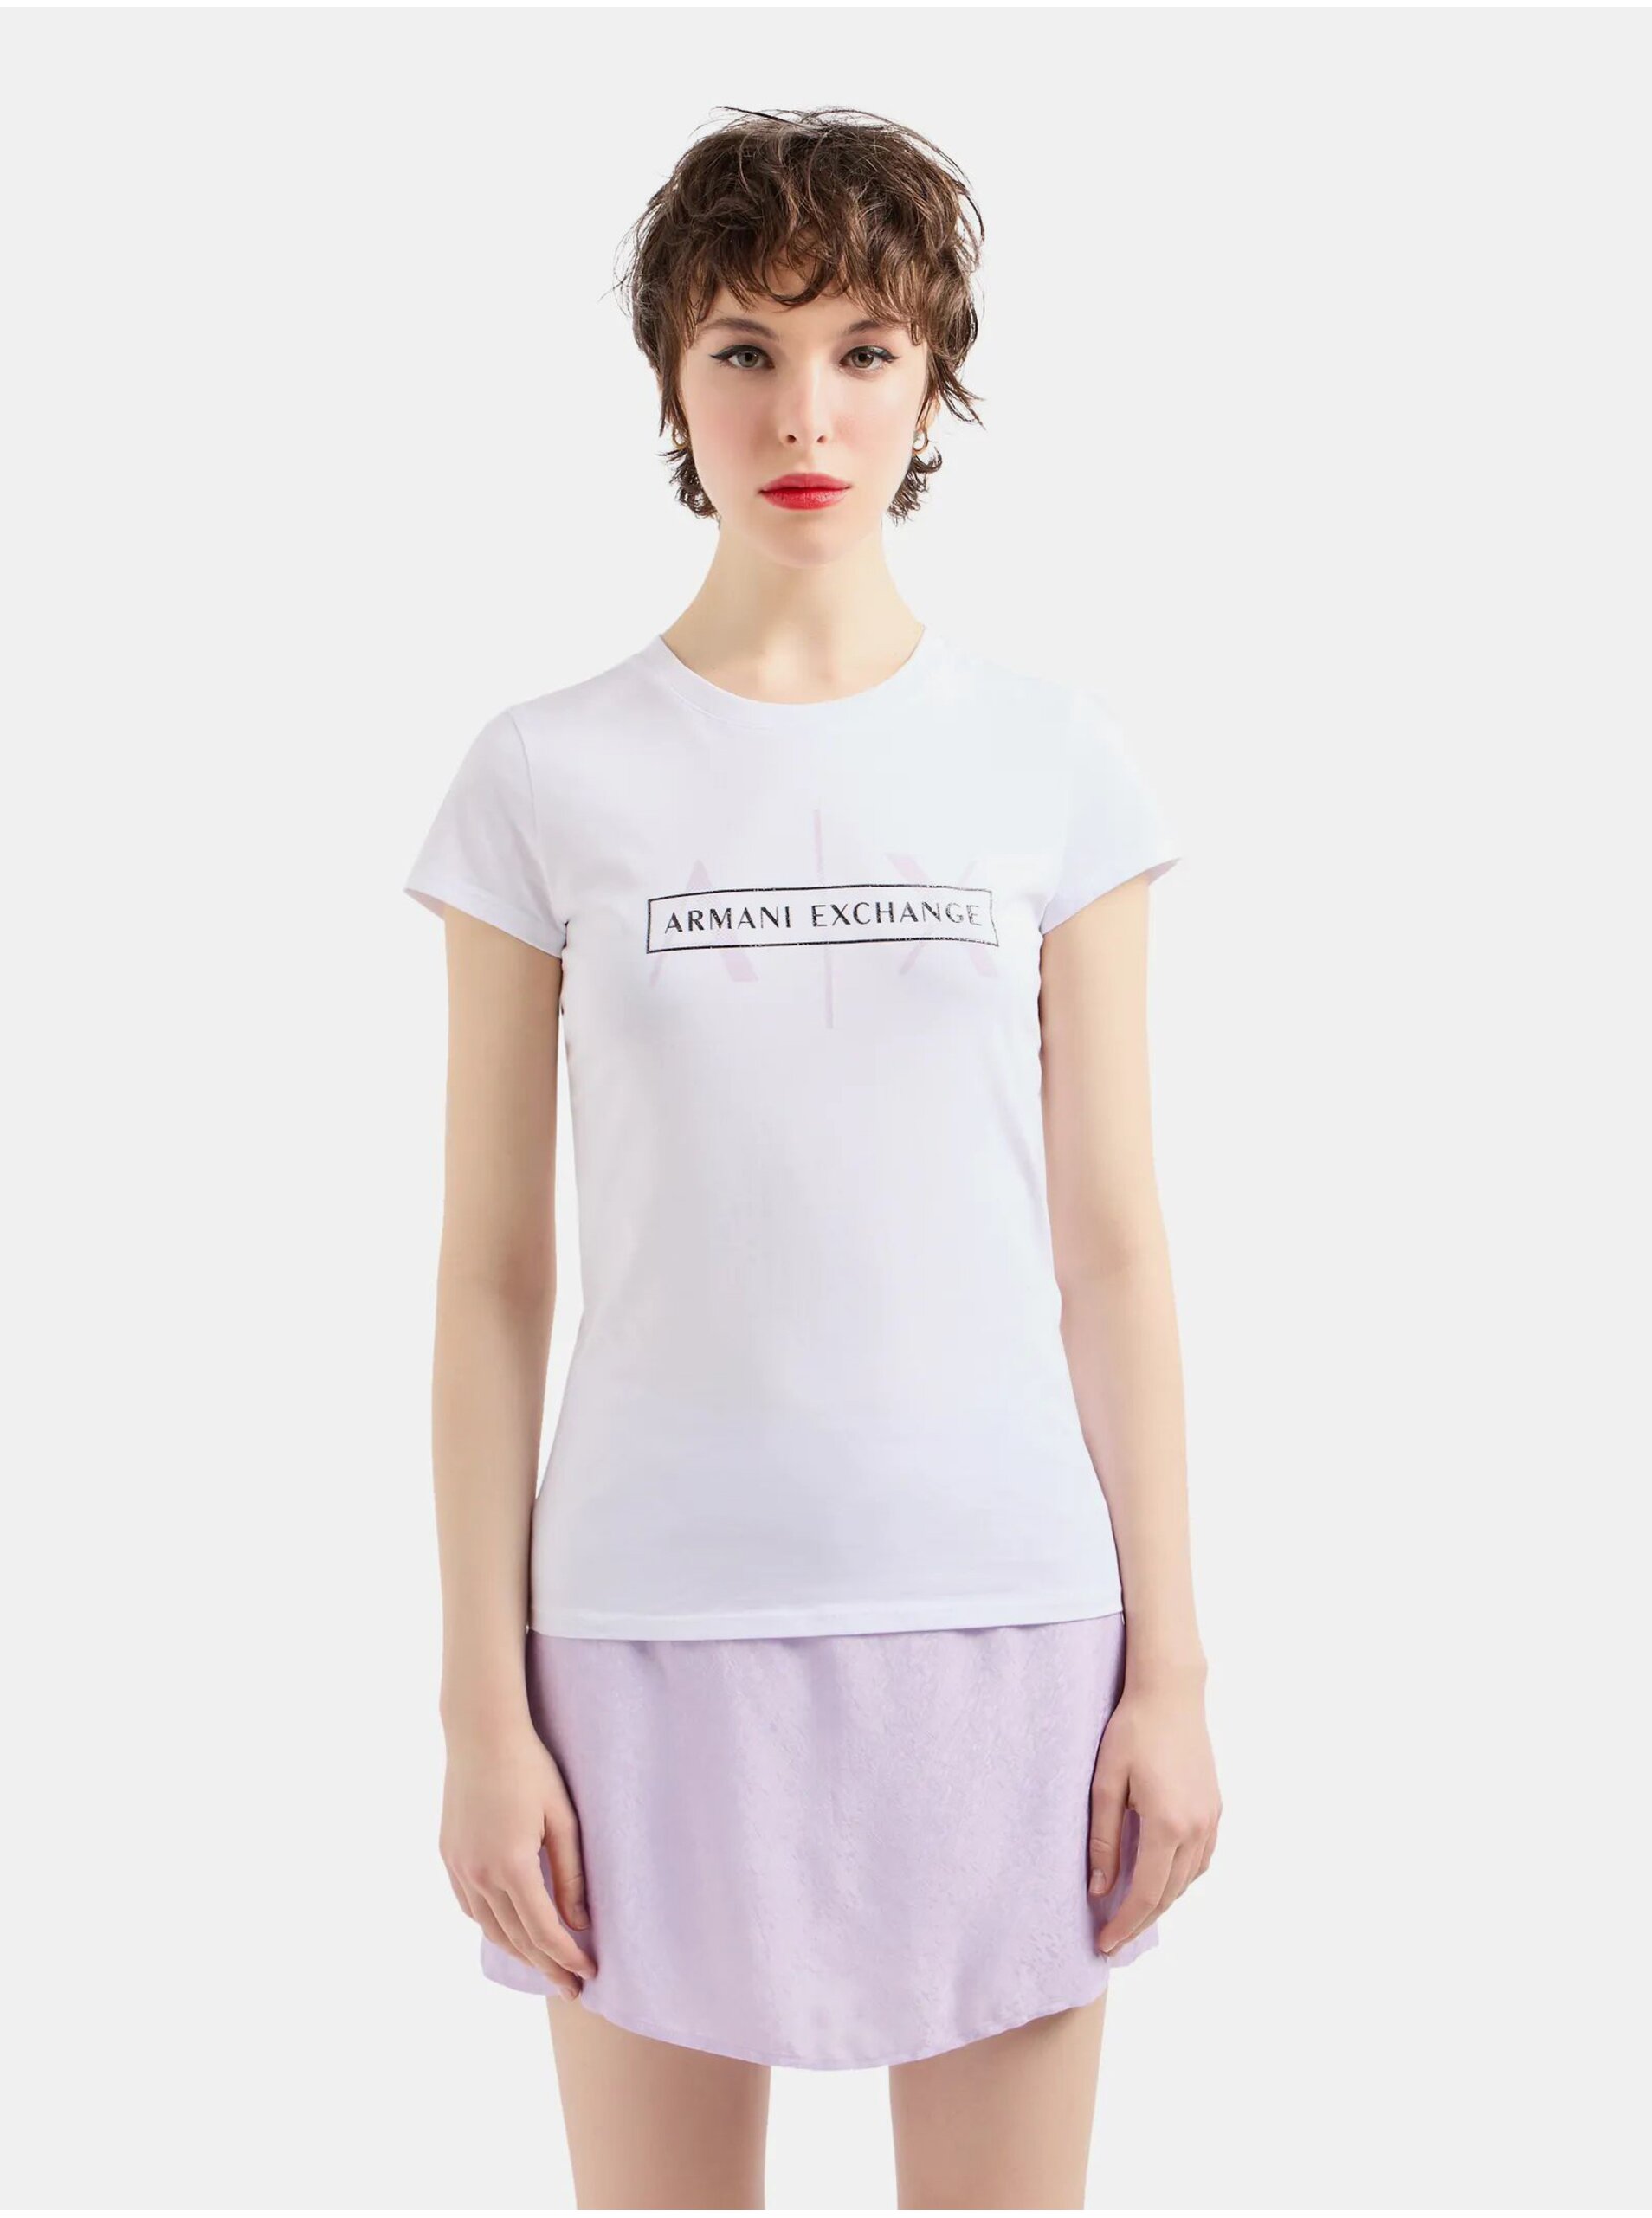 Lacno Biele dámske tričko Armani Exchange